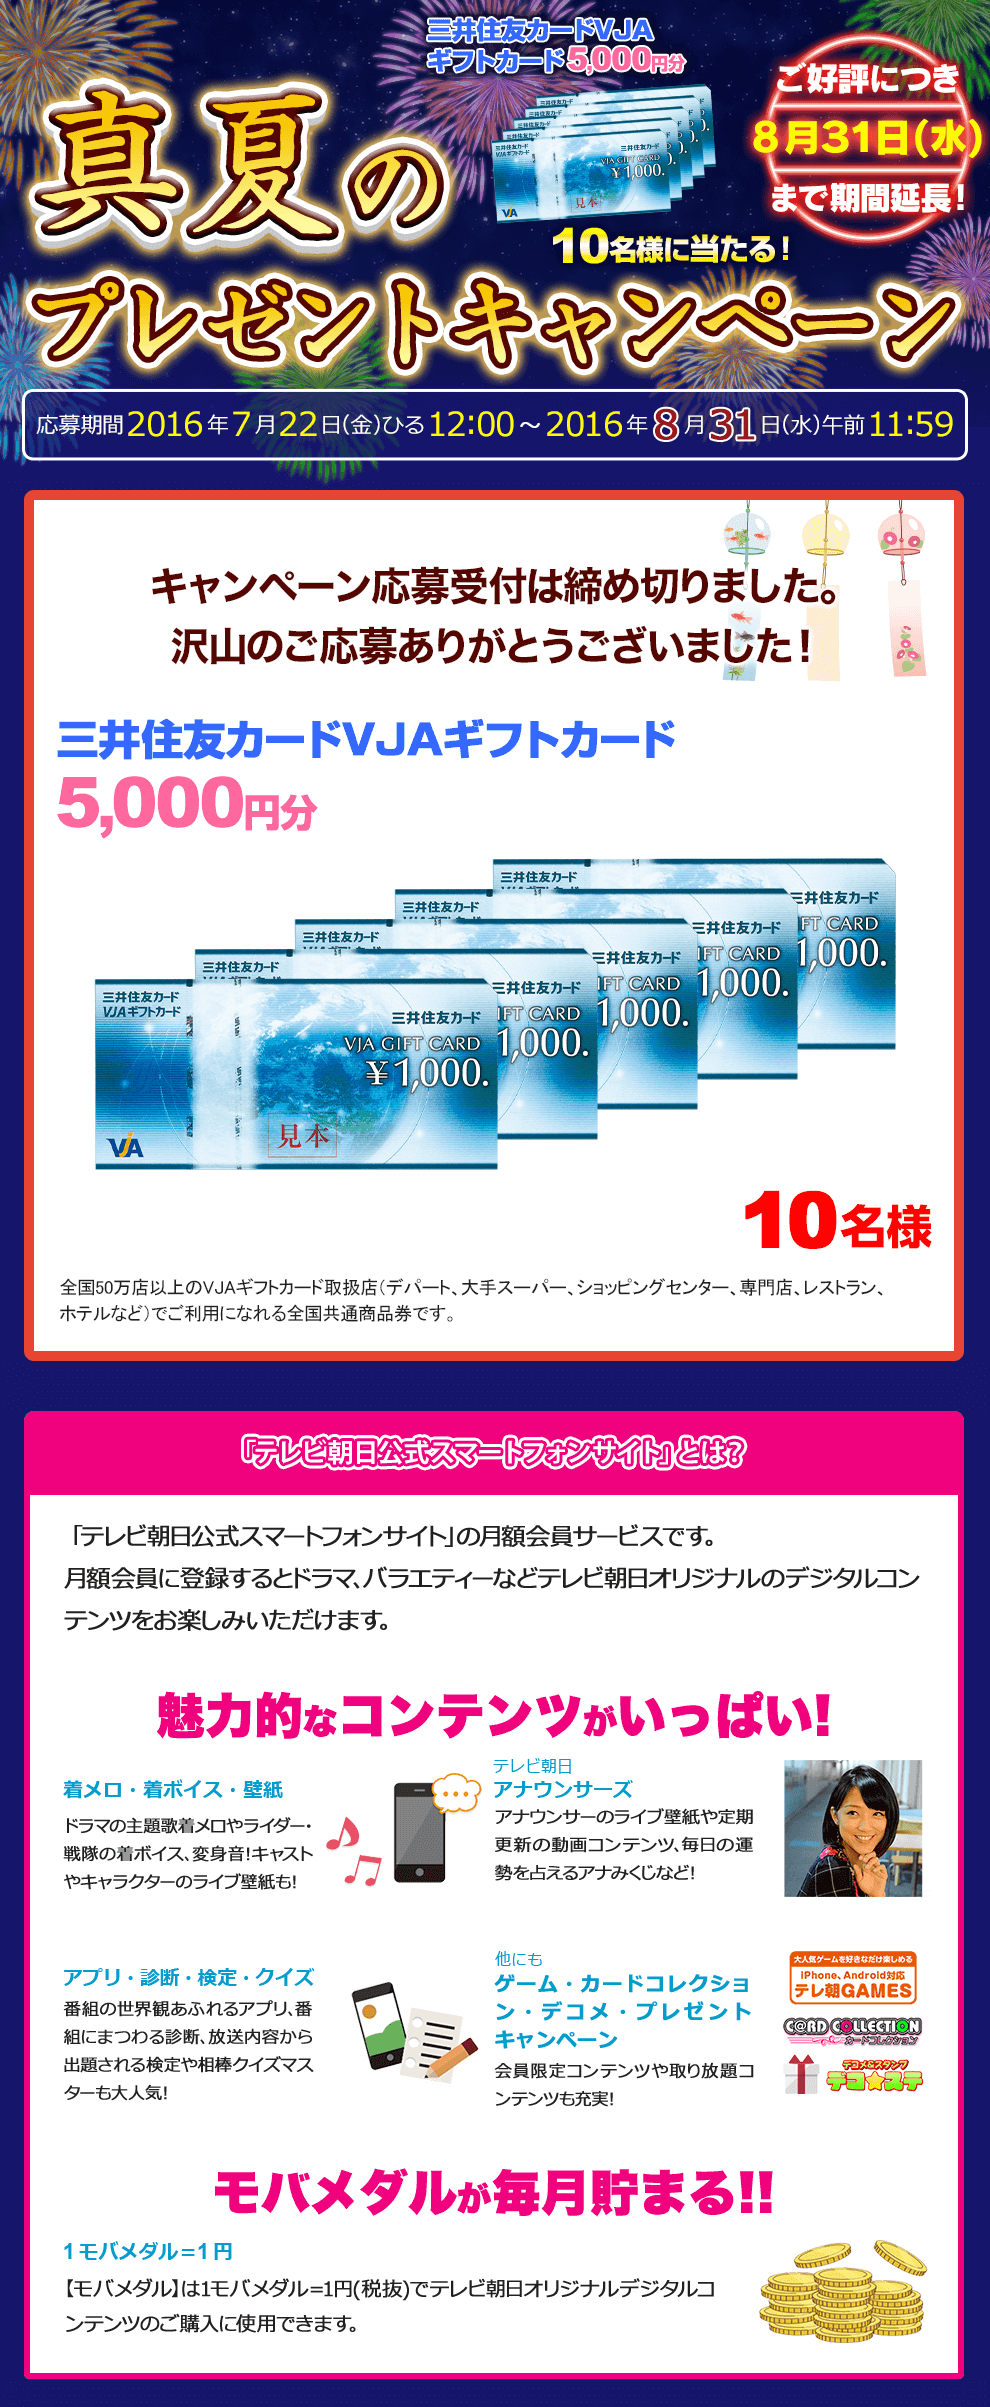 真夏のプレゼントキャンペーン 三井住友カードVJAギフトカード5,000円分 10名様